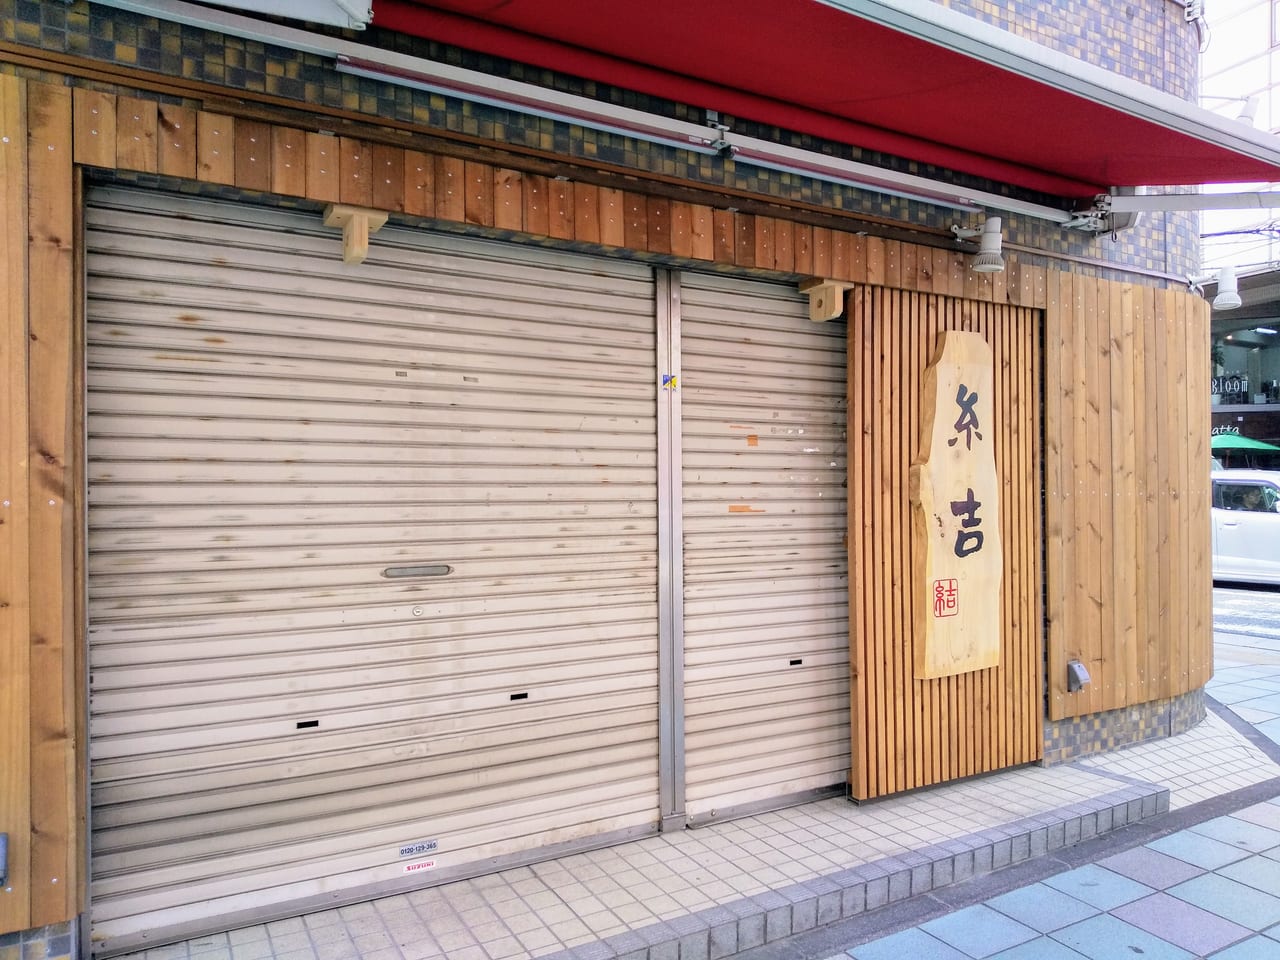 大和市 大和駅前の 味噌の侍 跡地に新規ラーメン店 糸吉 がオープンしています 自販機がある側からは入れないのでご注意ください 号外net 大和市